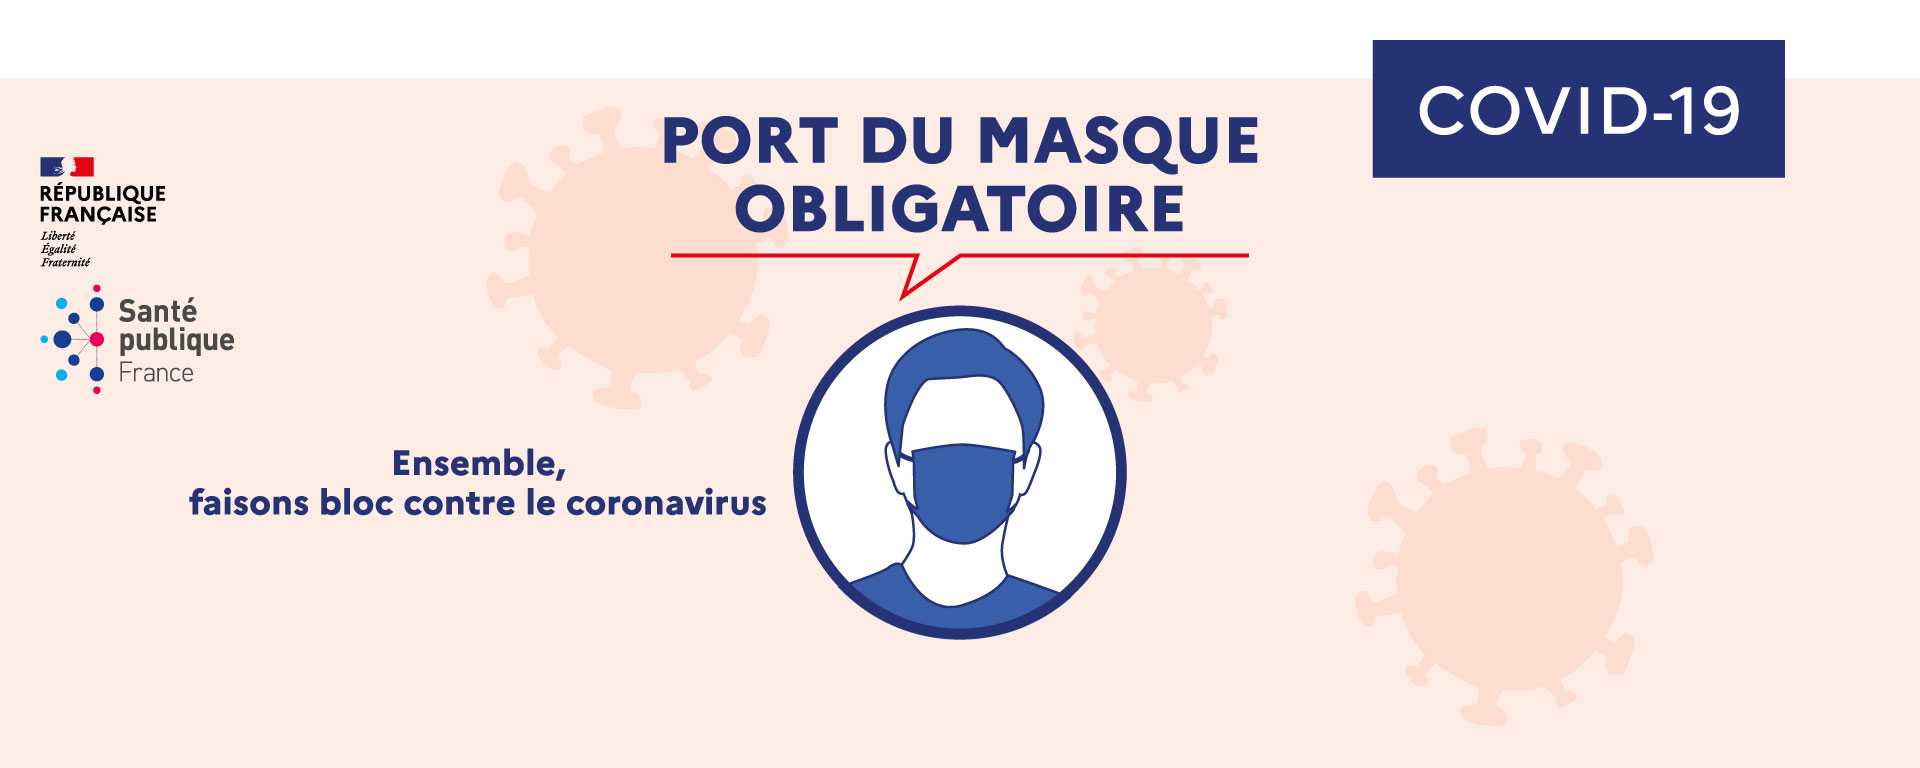 Port du masque obligatoire pour toute personne d'au moins 11 ans située sur les voies publiques, espaces publics et lieux ouverts au public